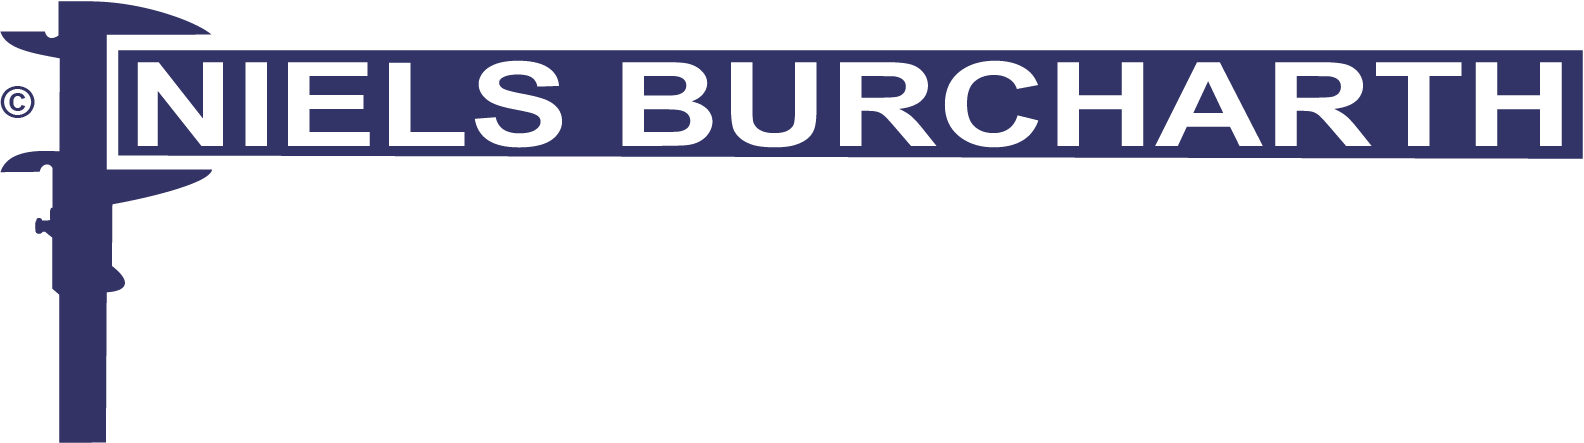 Niels Burcharth A/S - transportbånd og industriporte